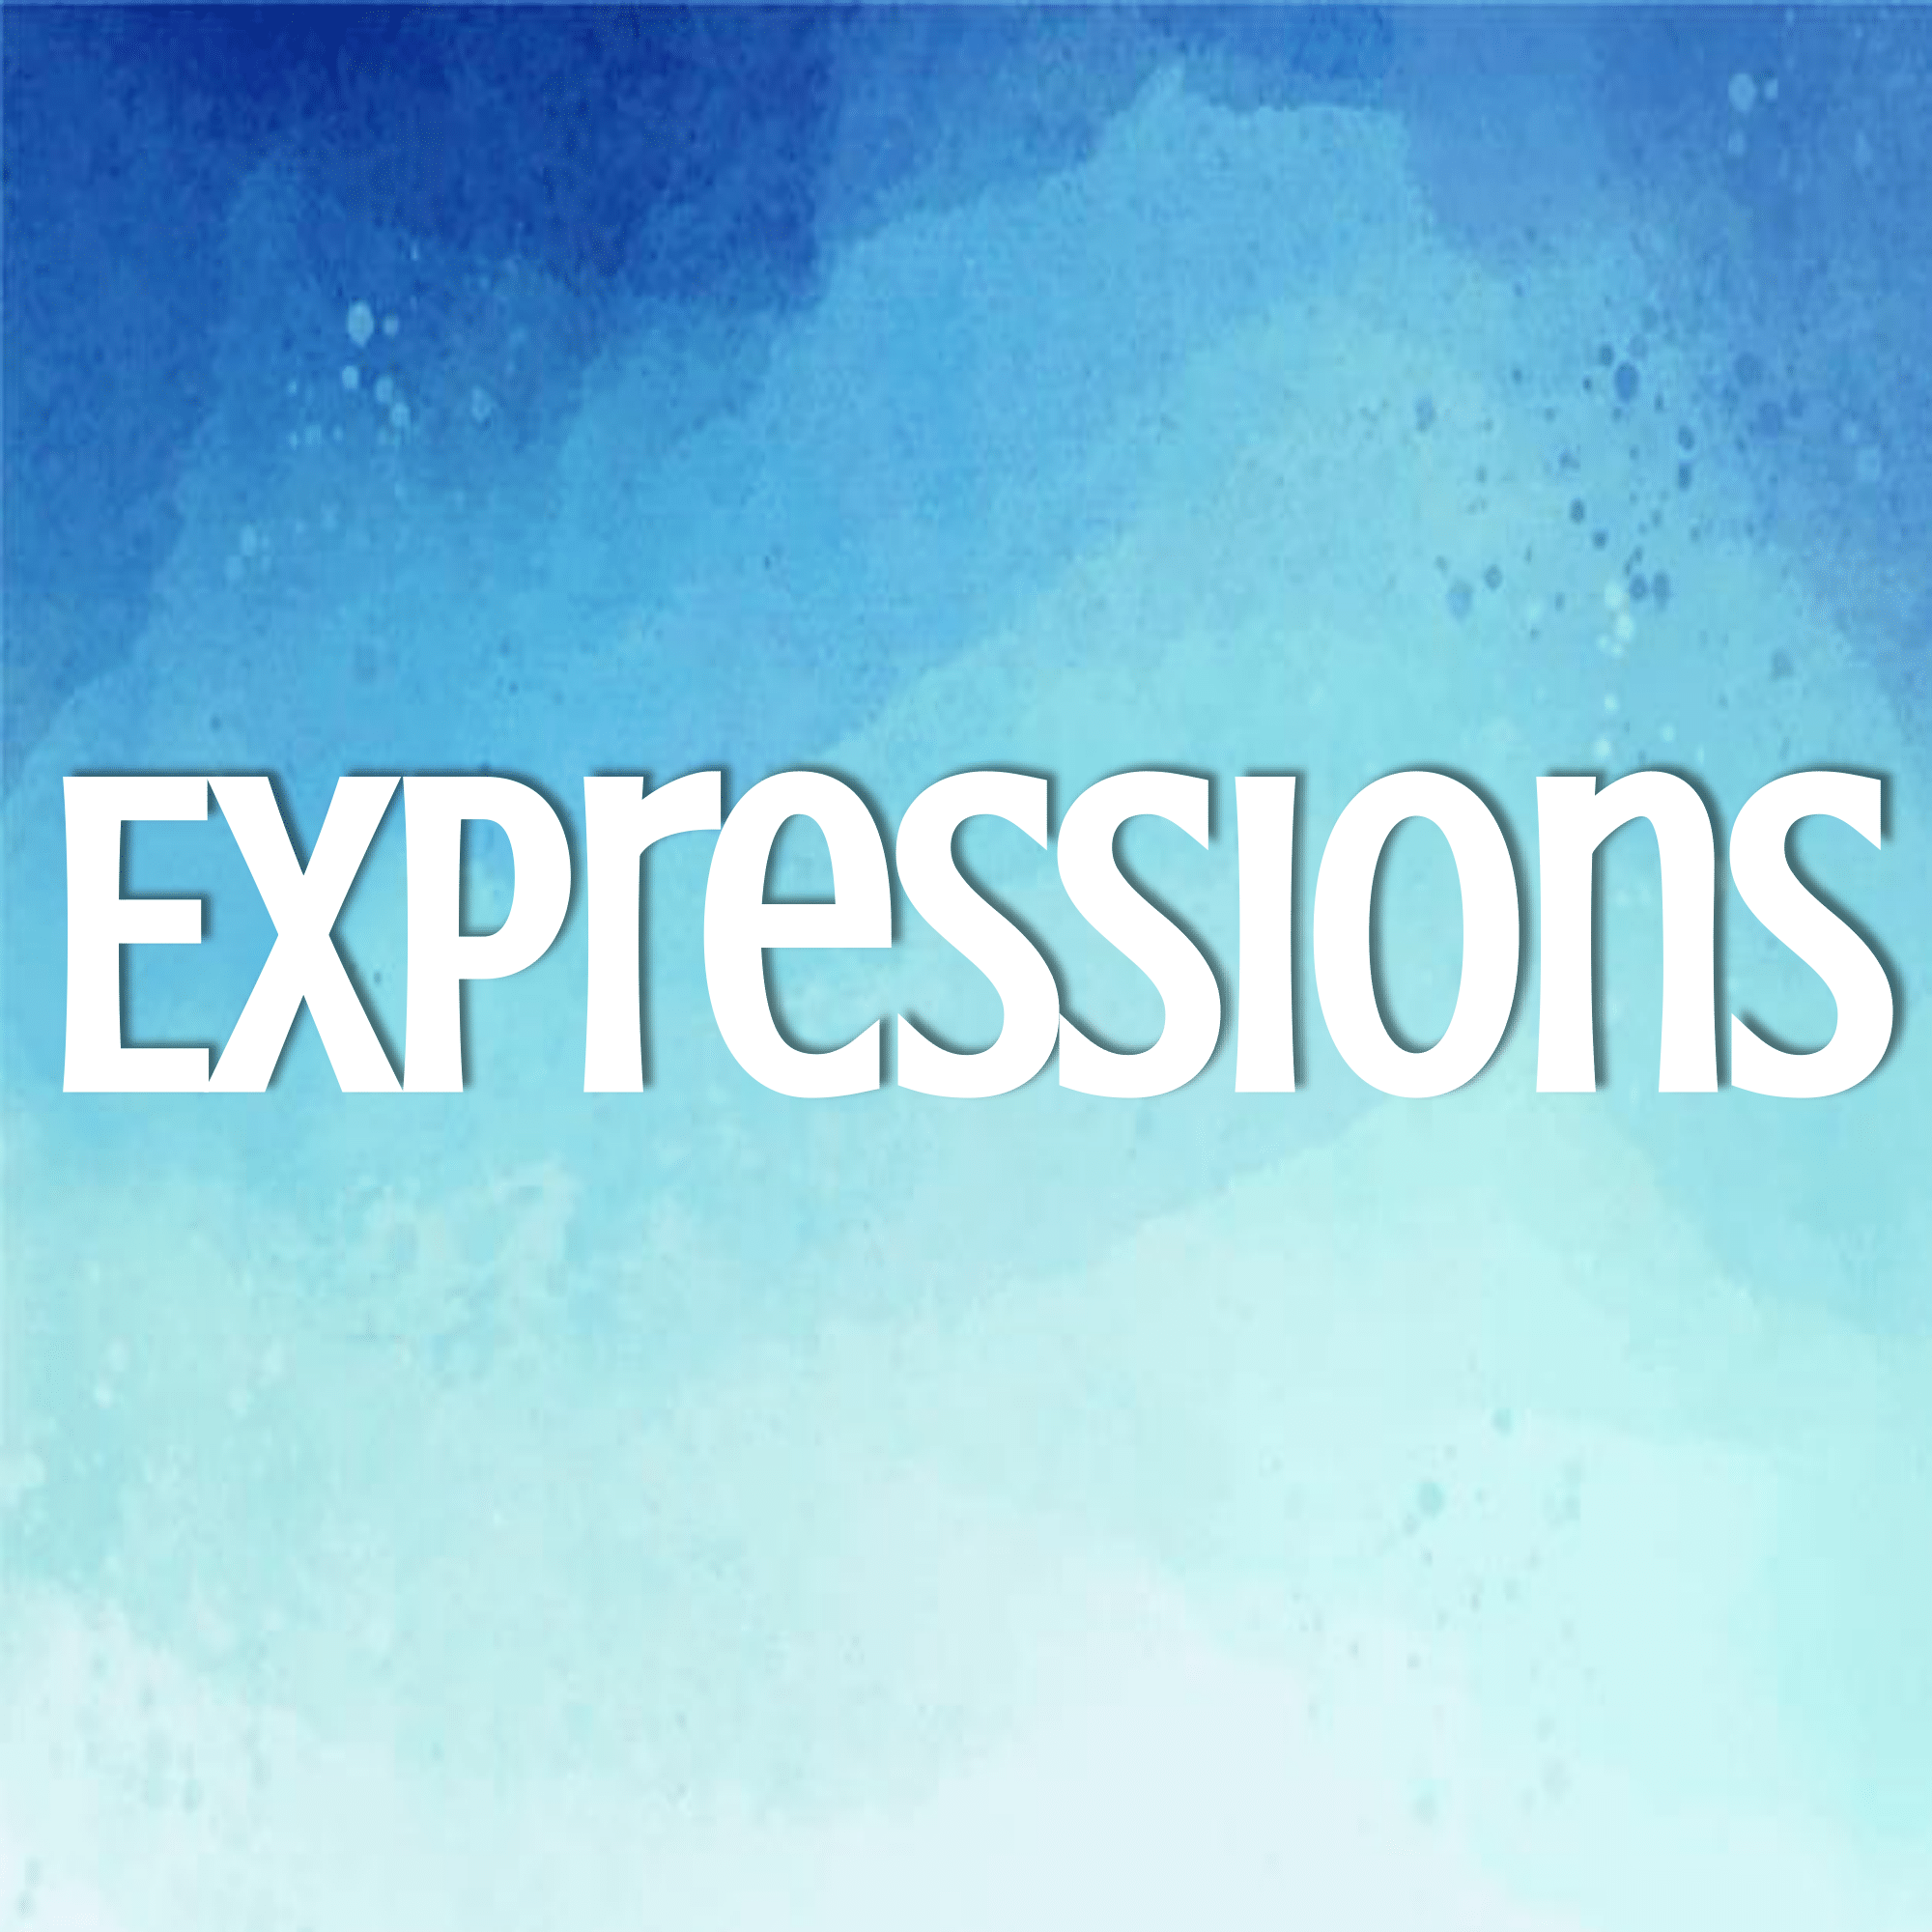 Equivalent Expressions - Class 6 - Quizizz